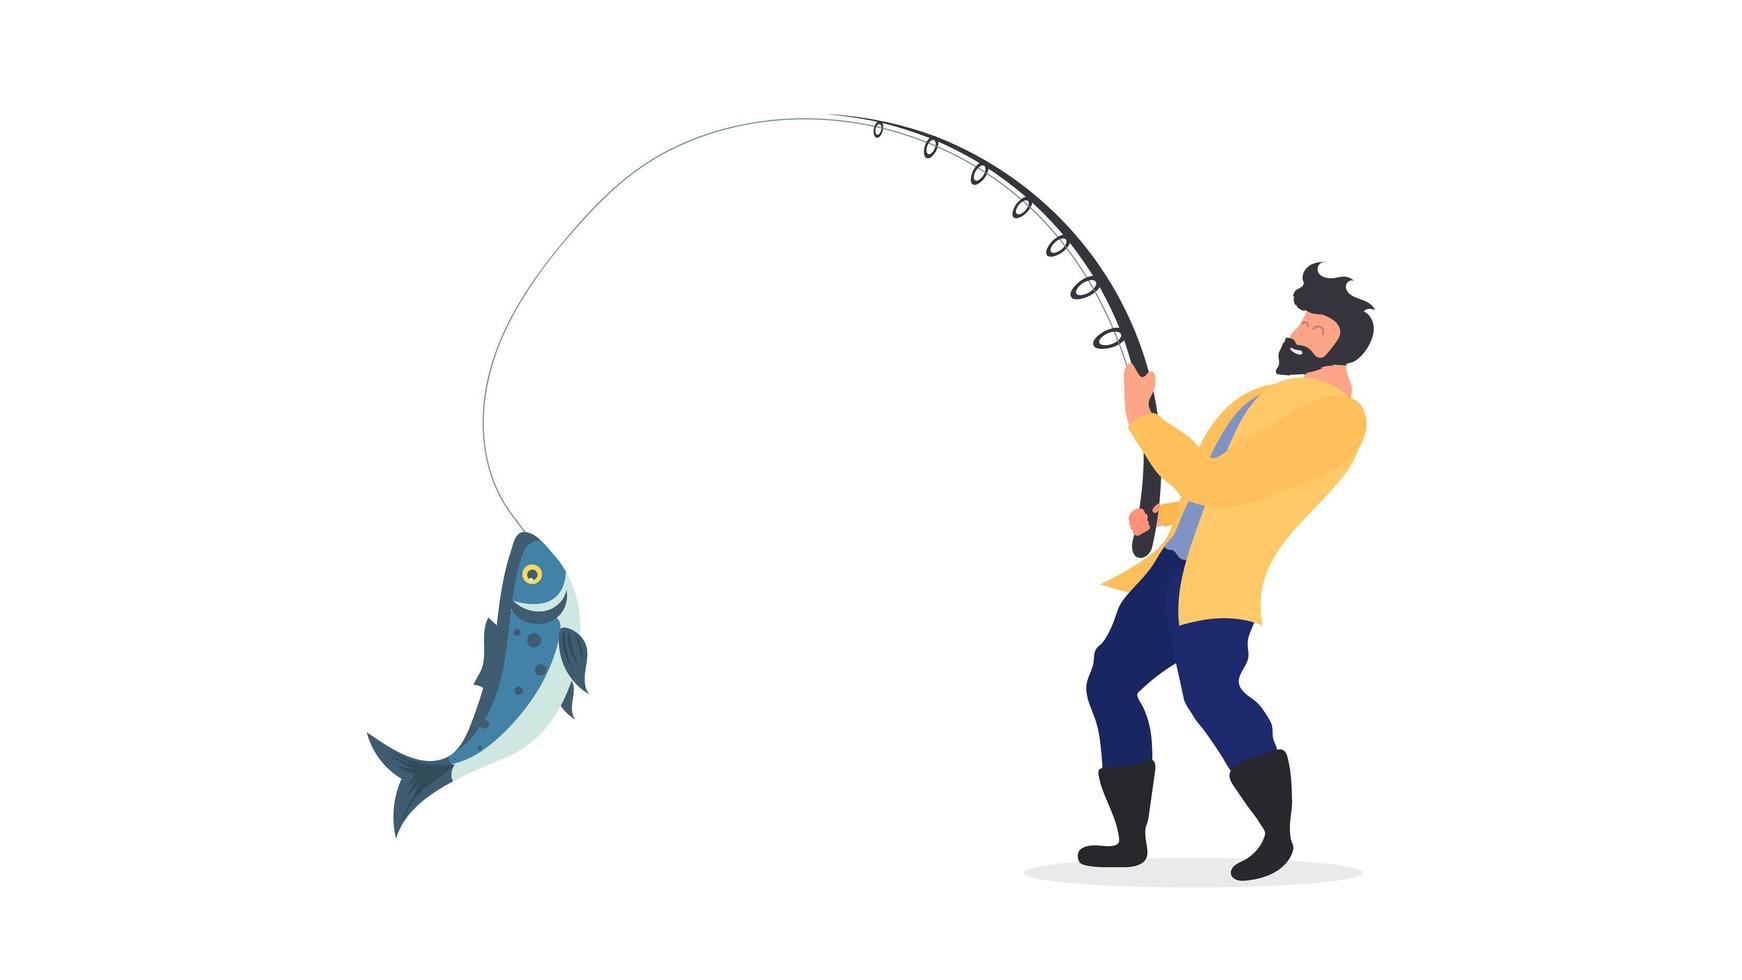 il pescatore sta pescando. un uomo con una canna da pesca tira un grosso pesce. concetto di pesca. isolato. vettore. vettore